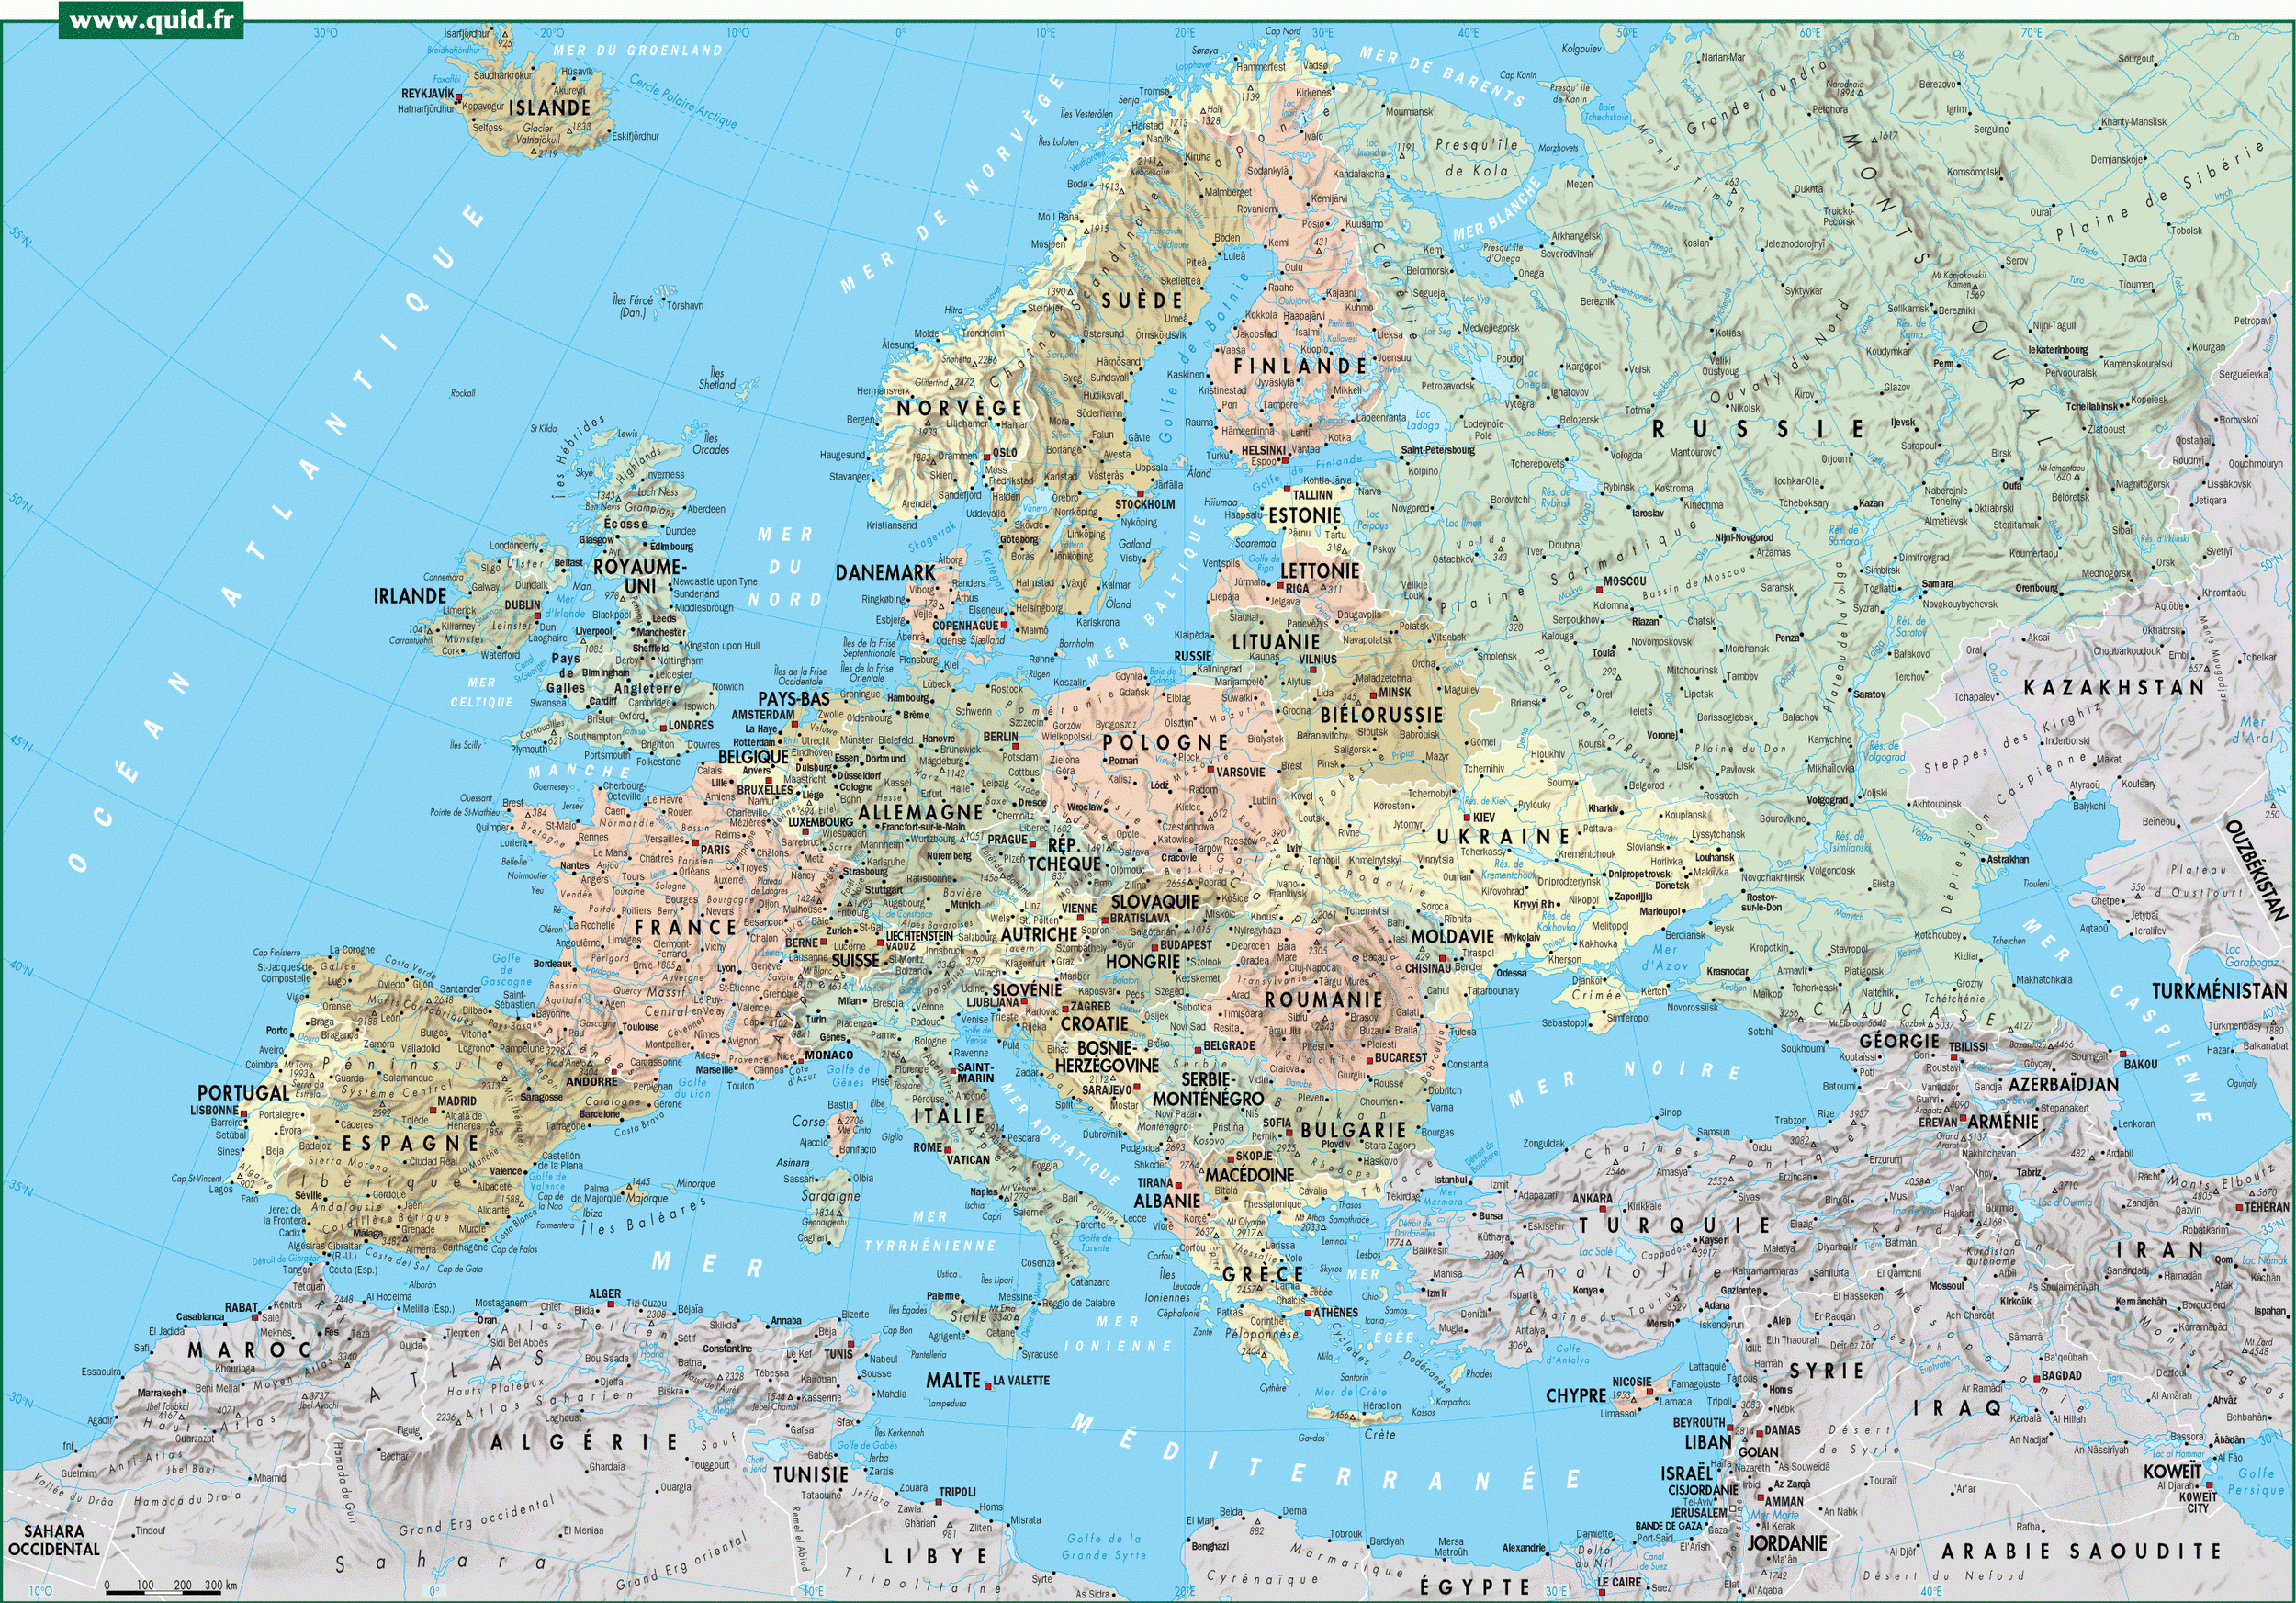 Balladeaquatre - Europe - Carte Détaillée / Quid.fr avec Carte De L Europe Détaillée 